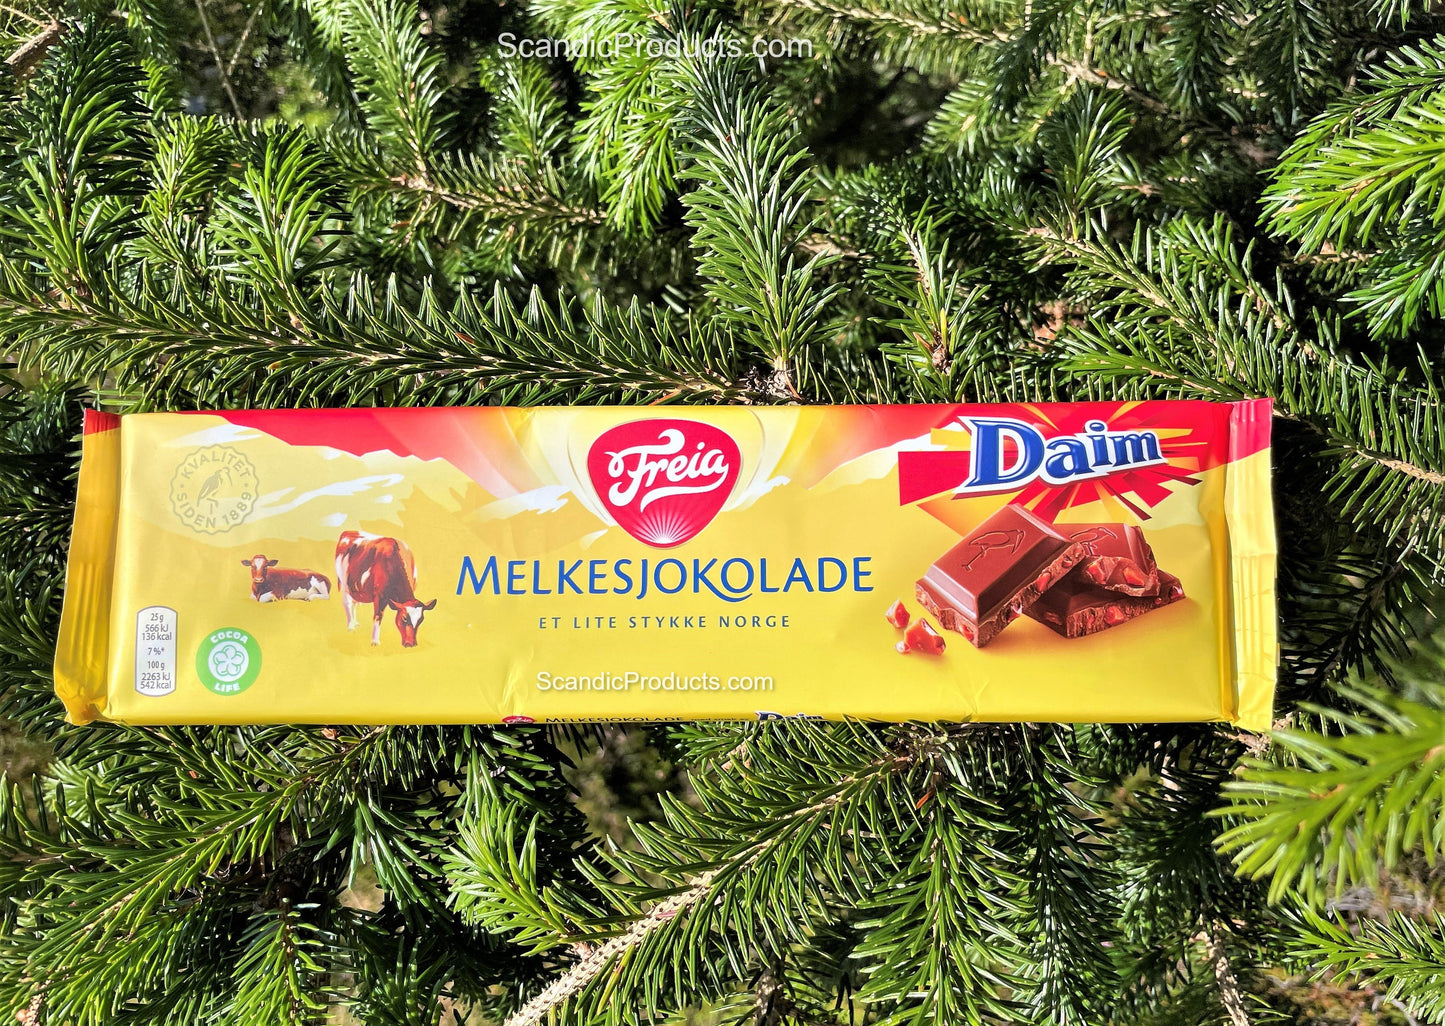 Freia Melkesjokolade Daim - Freia Milk Chocolate with Daim 200 grams (7 oz)